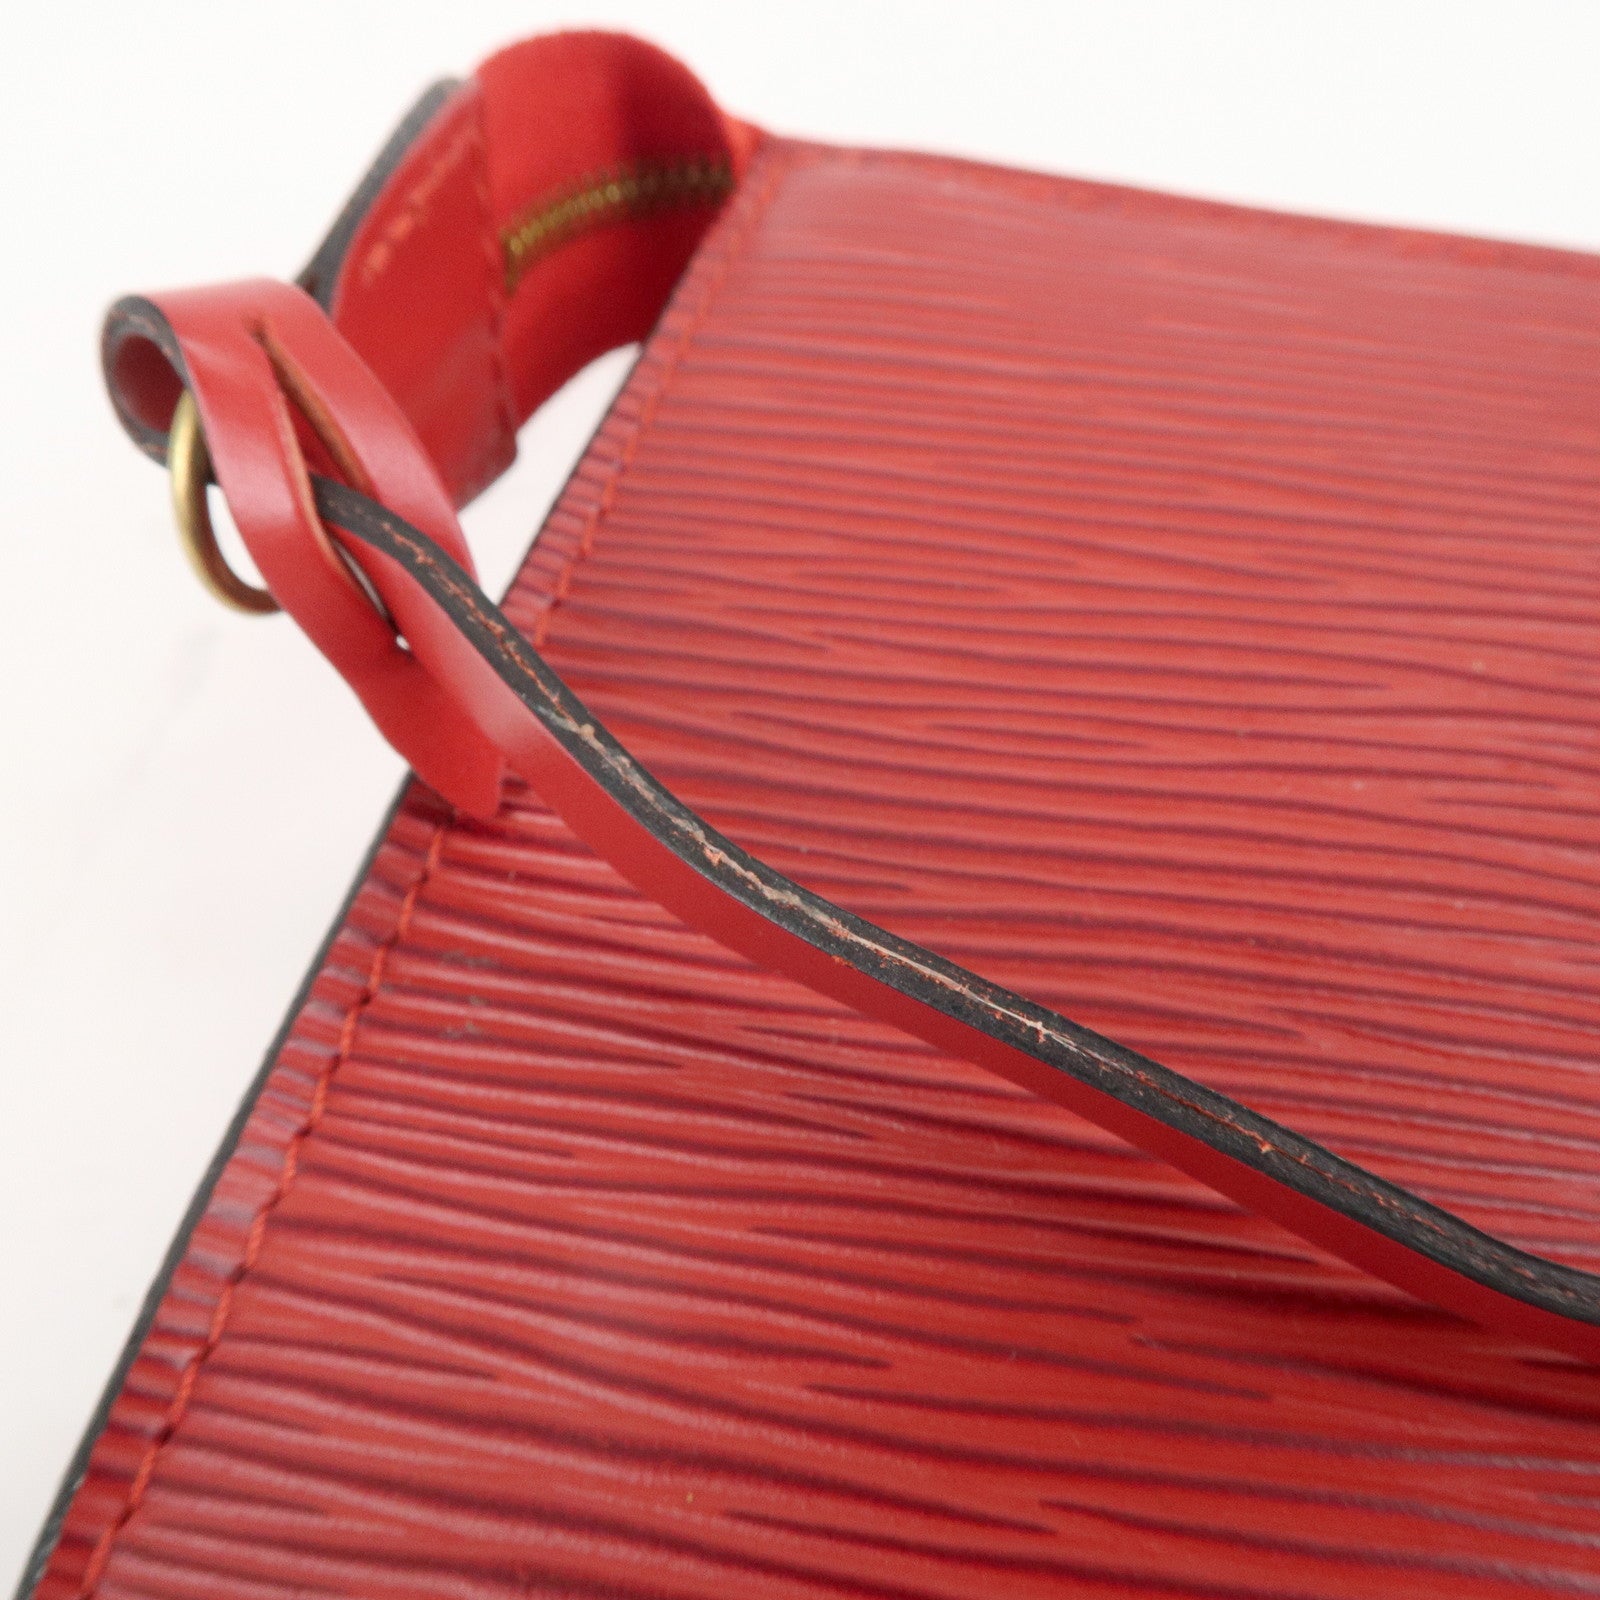 Louis Vuitton Vintage - Epi Pochette Accessoires Bag - Orange